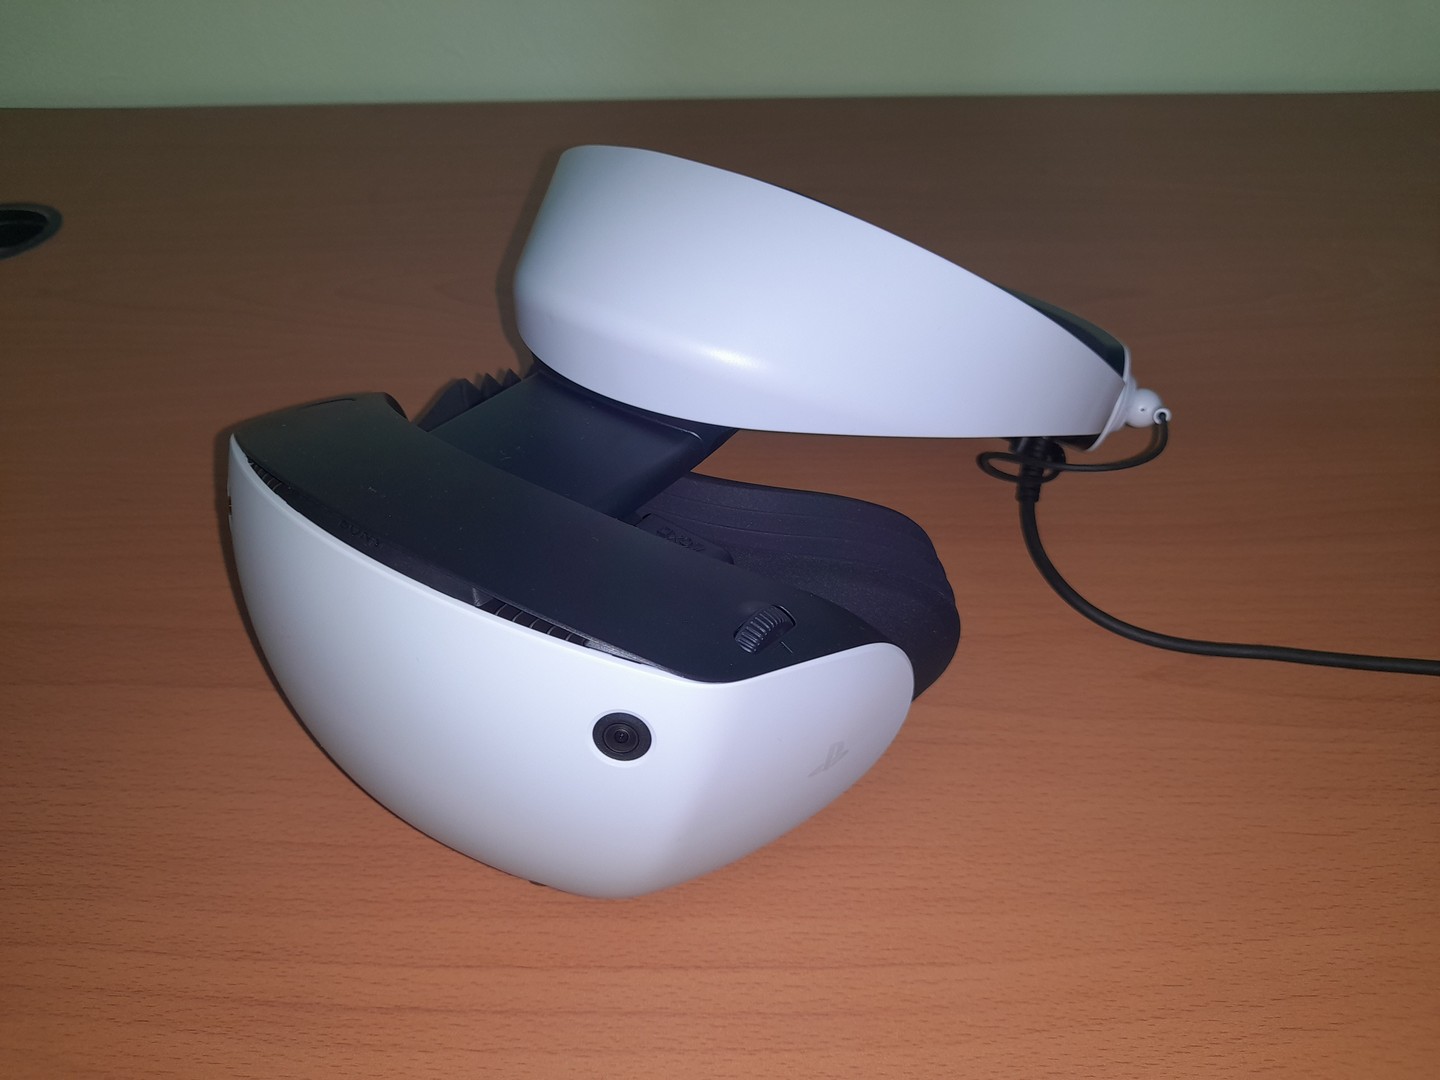 consolas y videojuegos - psvr2 : headset de realidad virtual para playstation 5 (3 horas de uso) 0